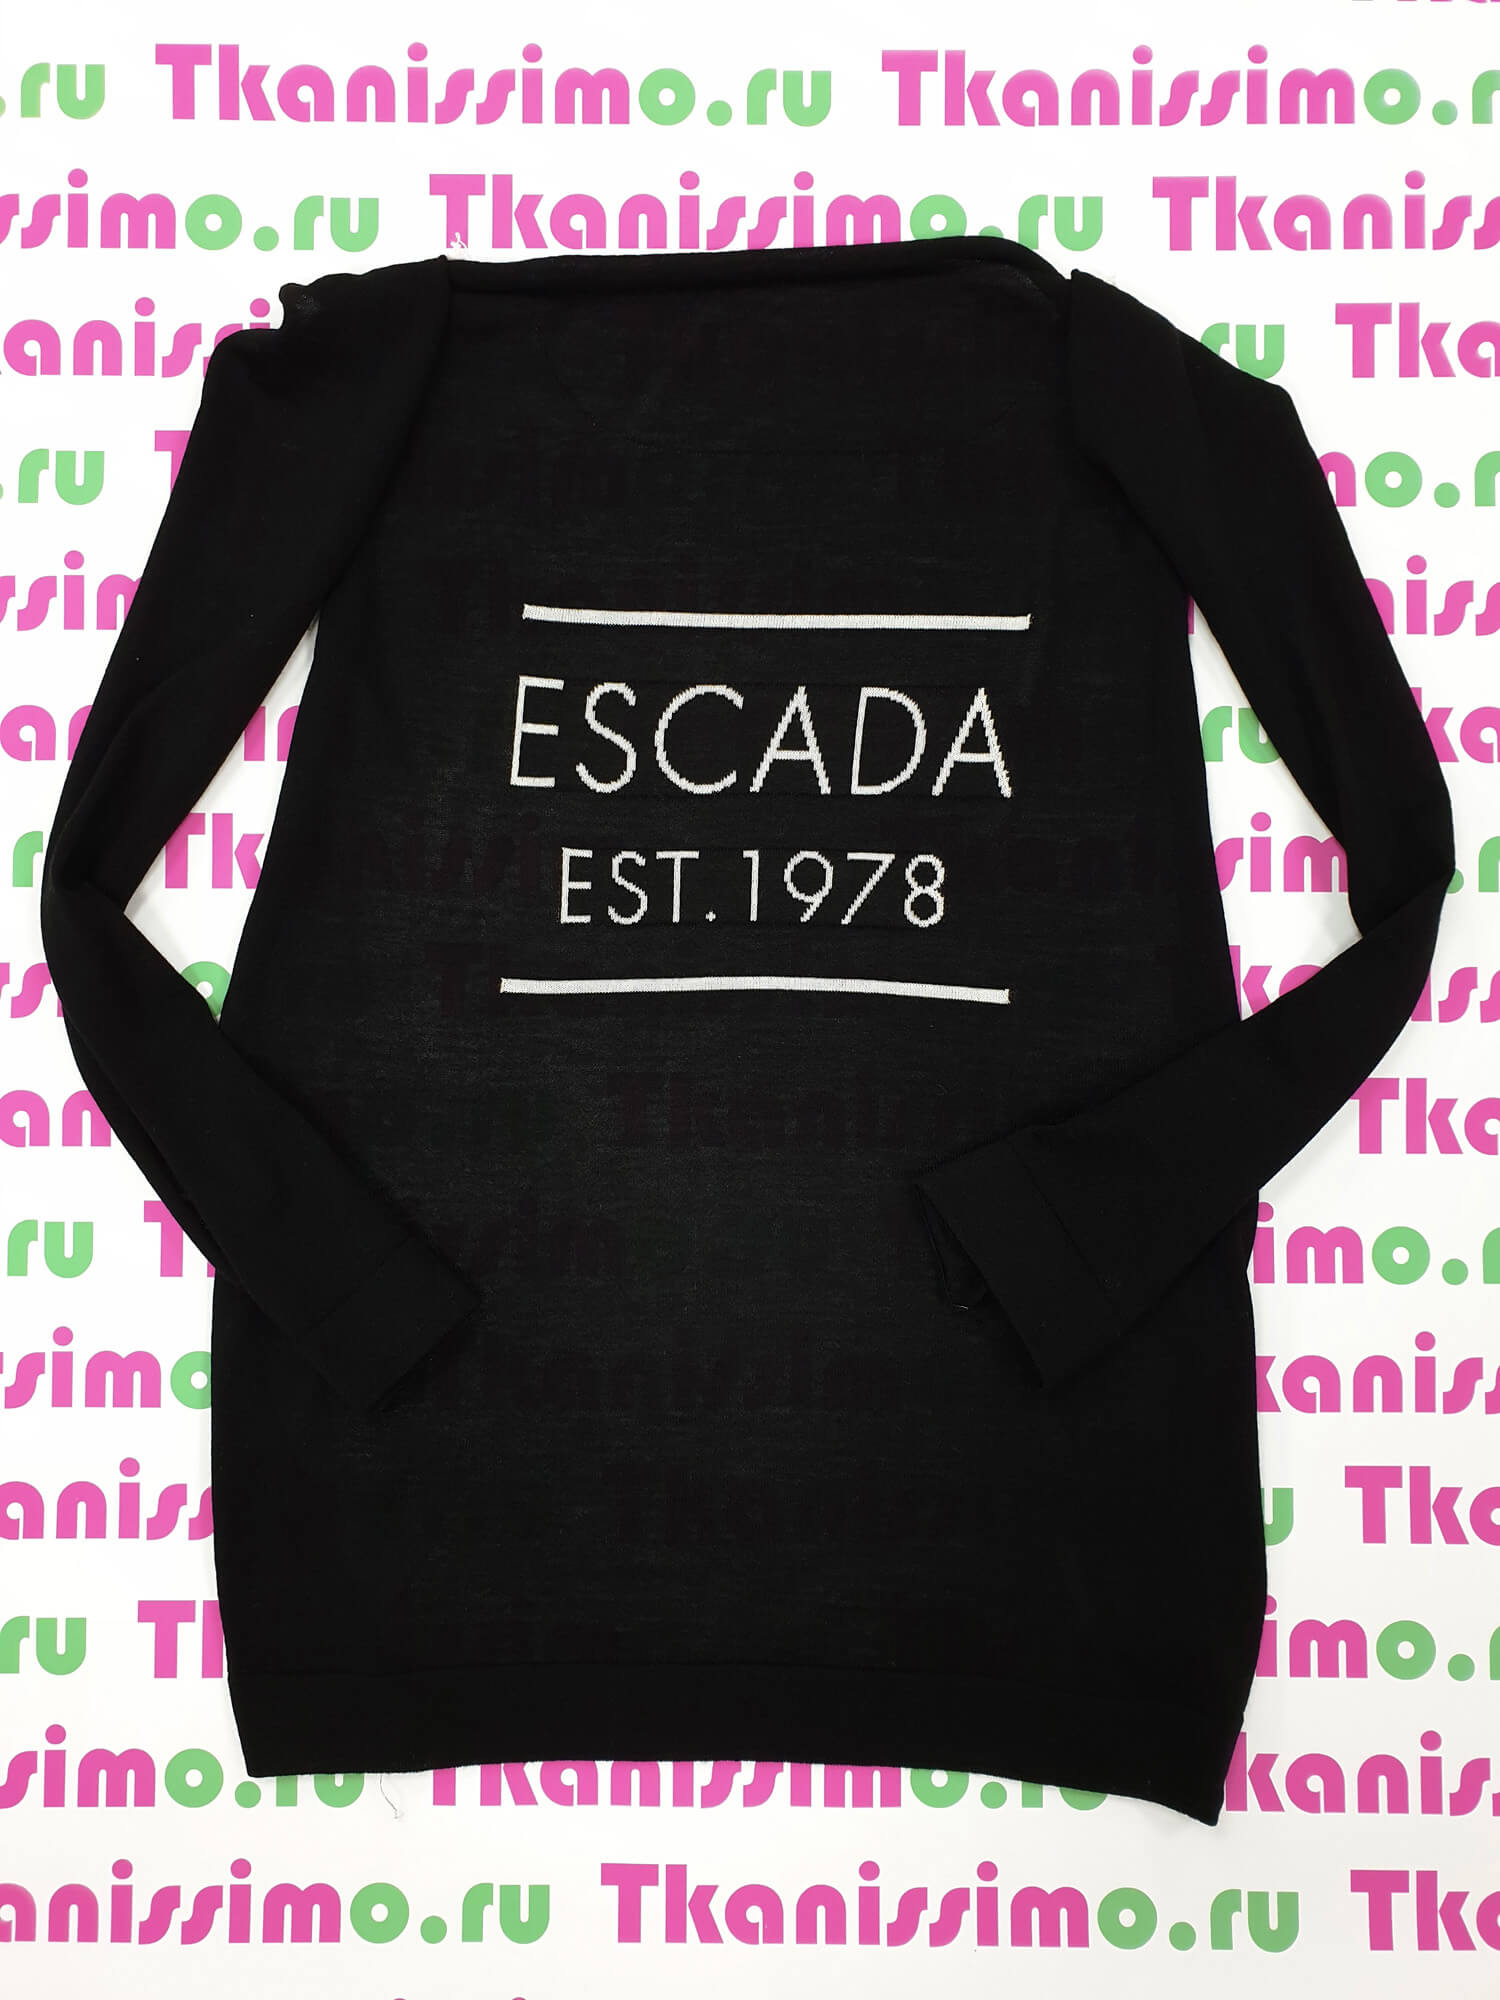 Пуловер Escada, цвет Черный